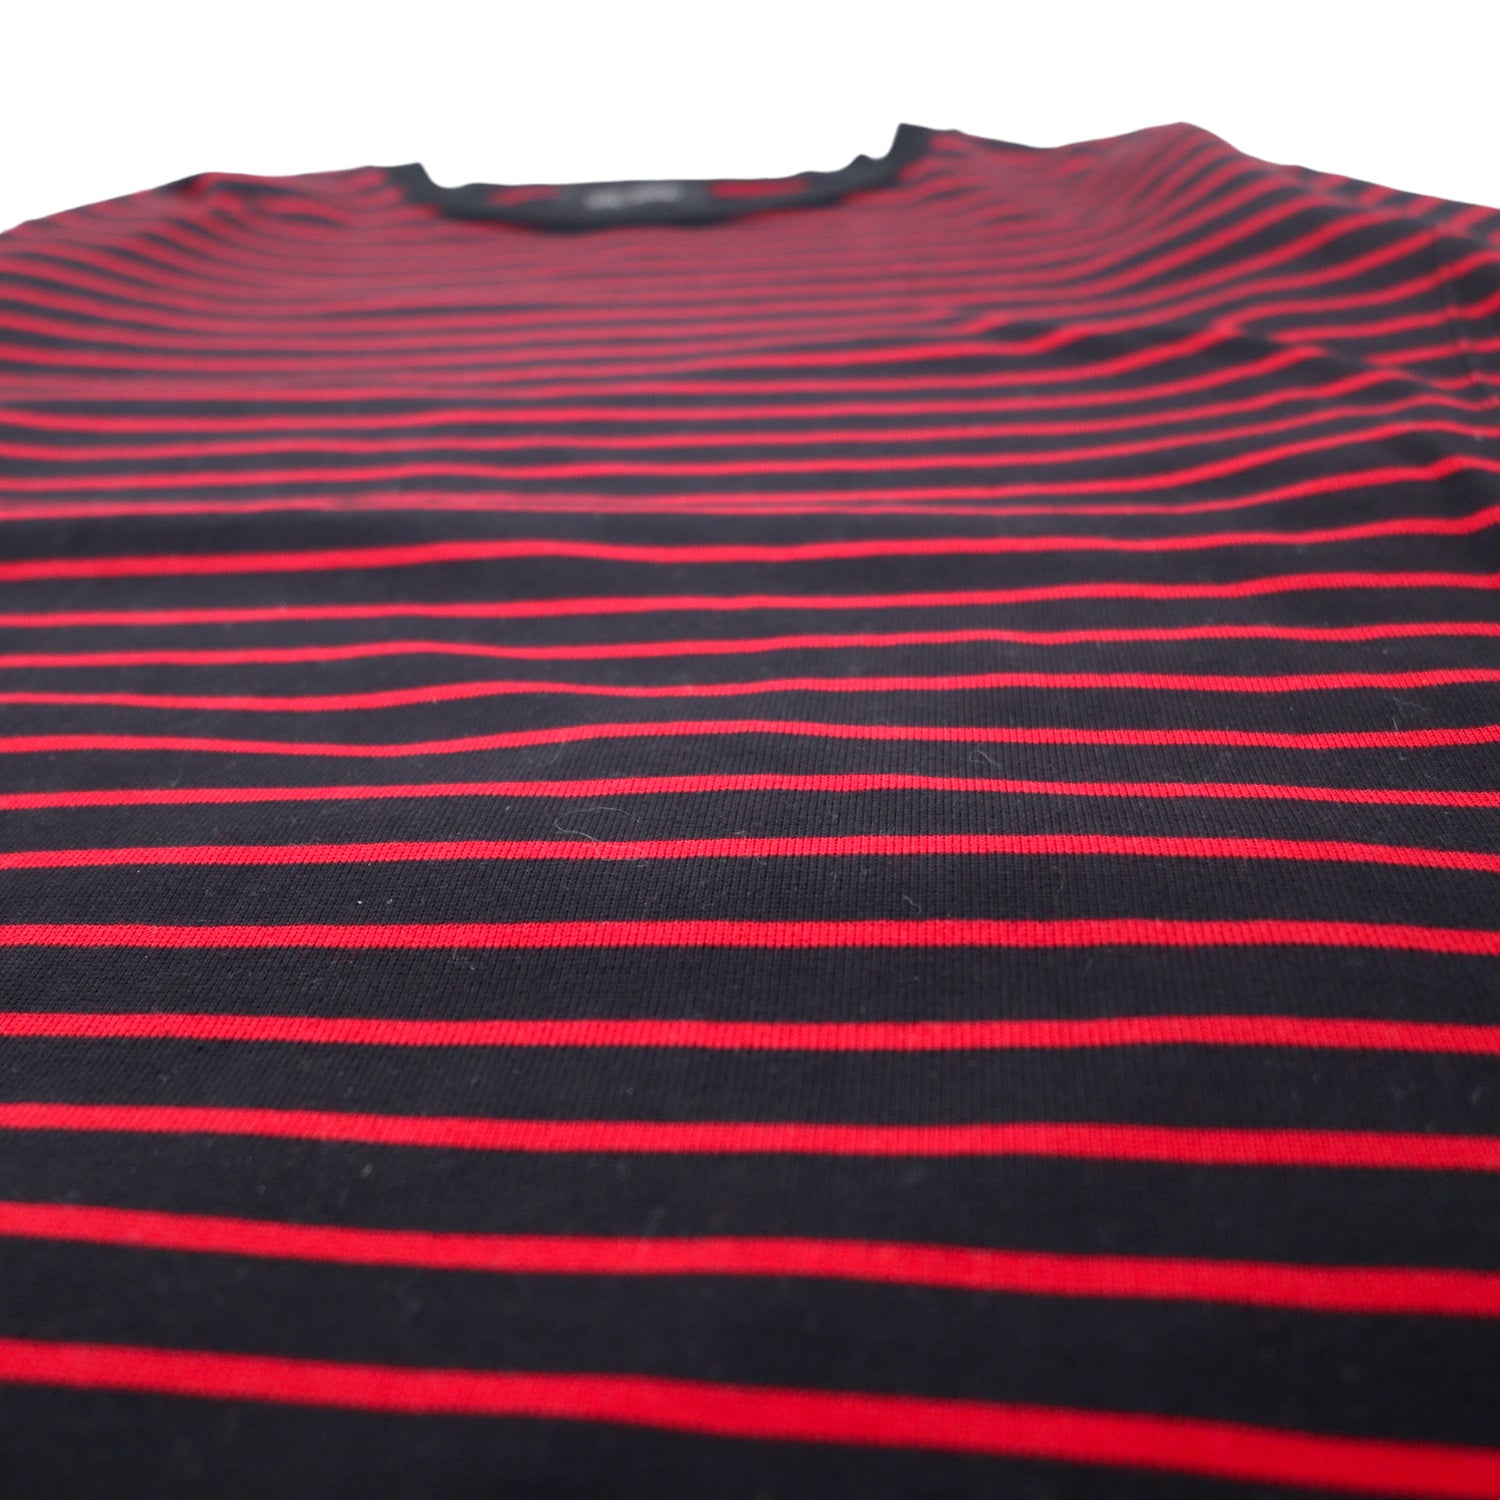 VAINL ARCHIVE Big Silhouette Striped T-Shirt L Black Red Cotton